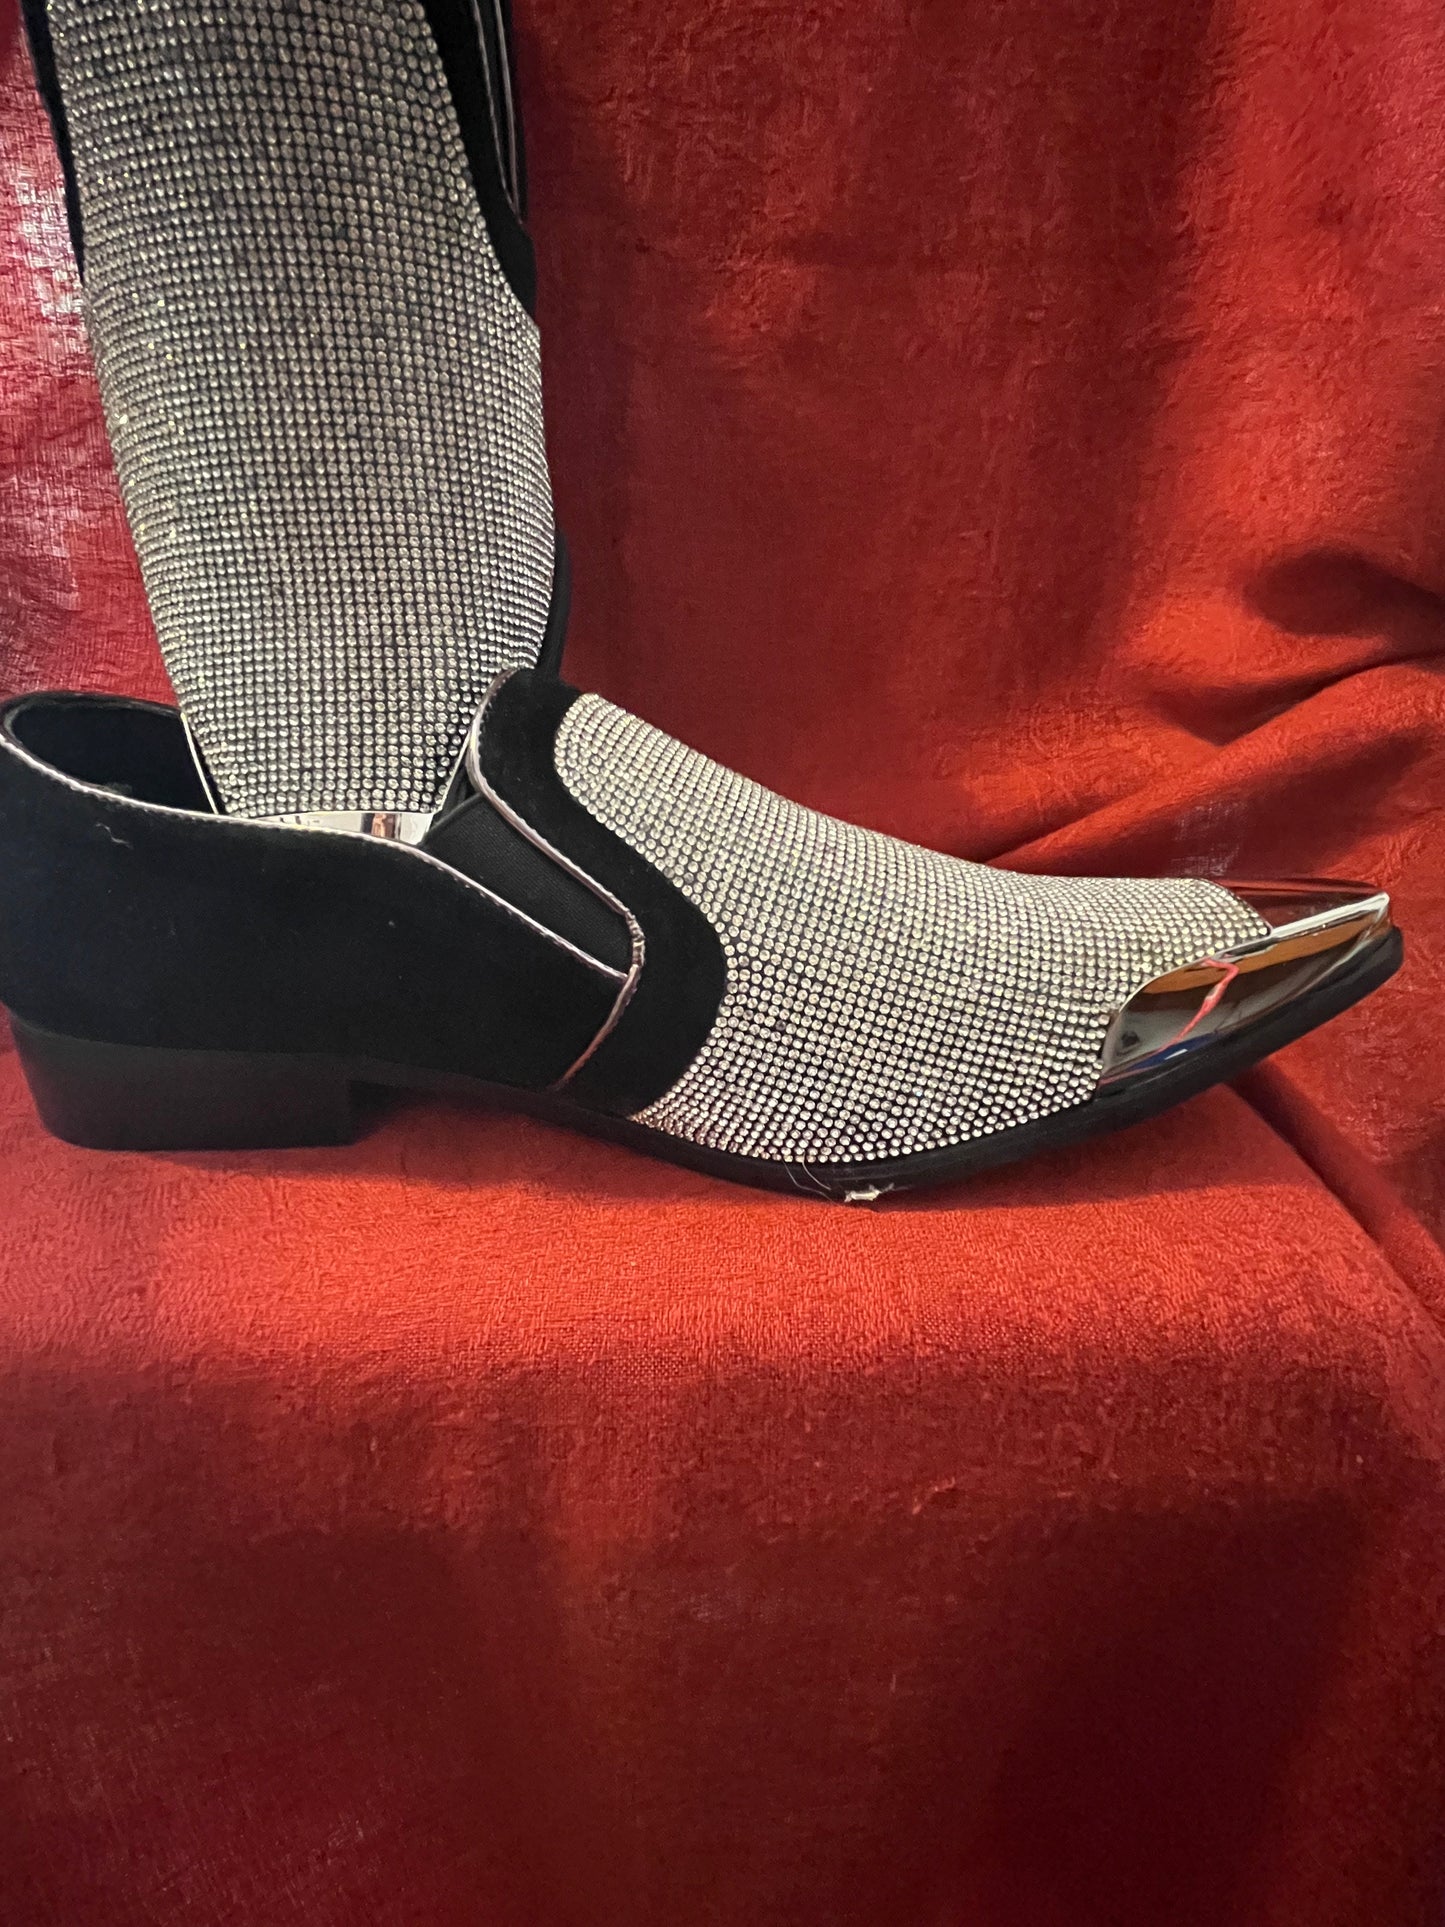 NWOB Bolano "Dezzy" Glitter Encrusted Rhinestone Tuxedo Style Shoe-Size 10.5